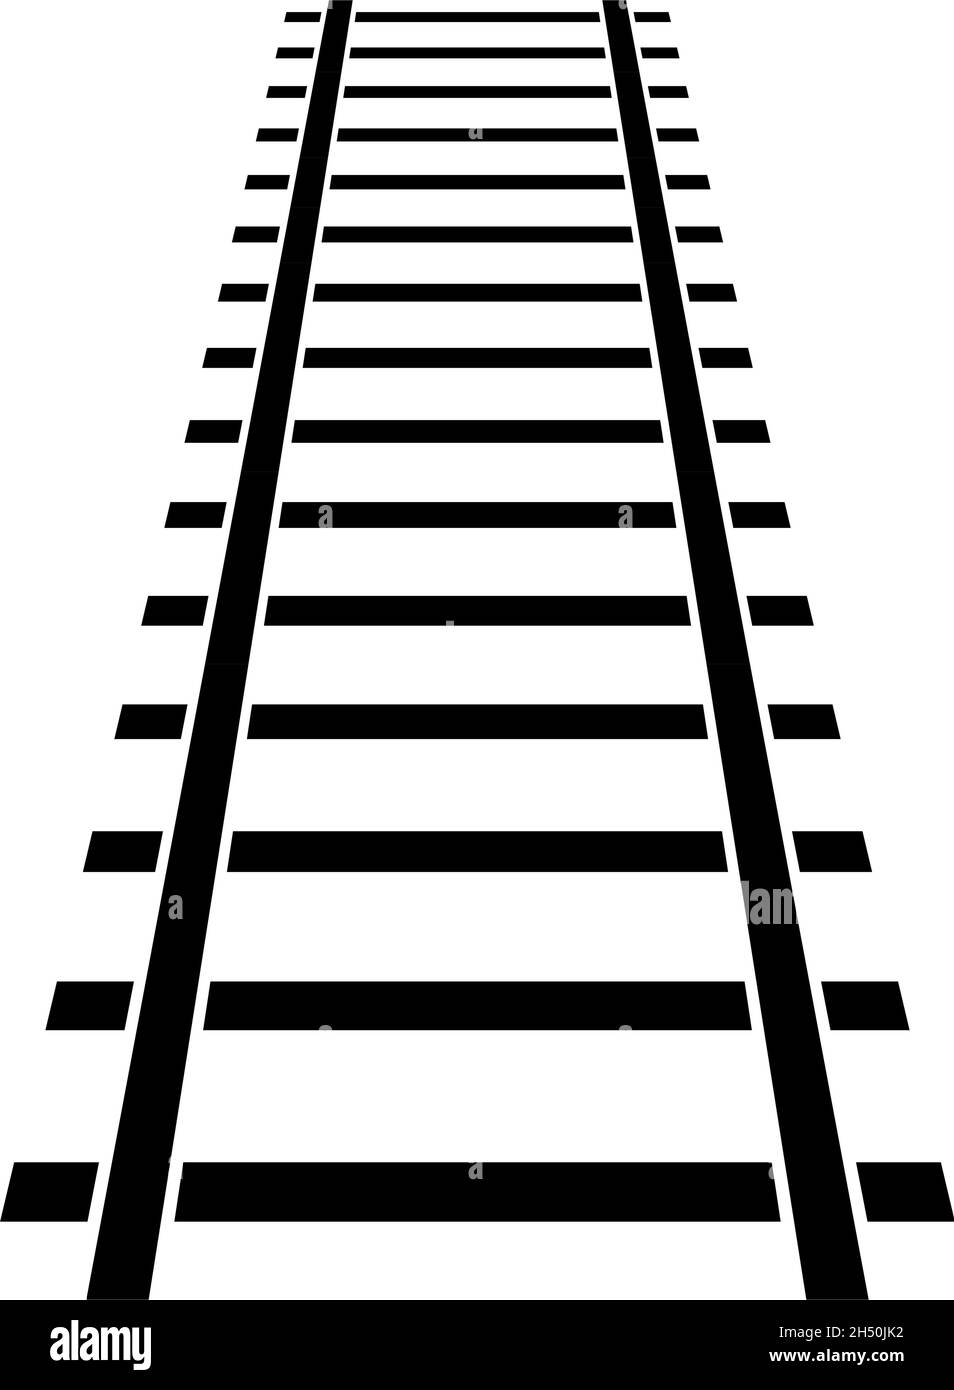 clipart railroads